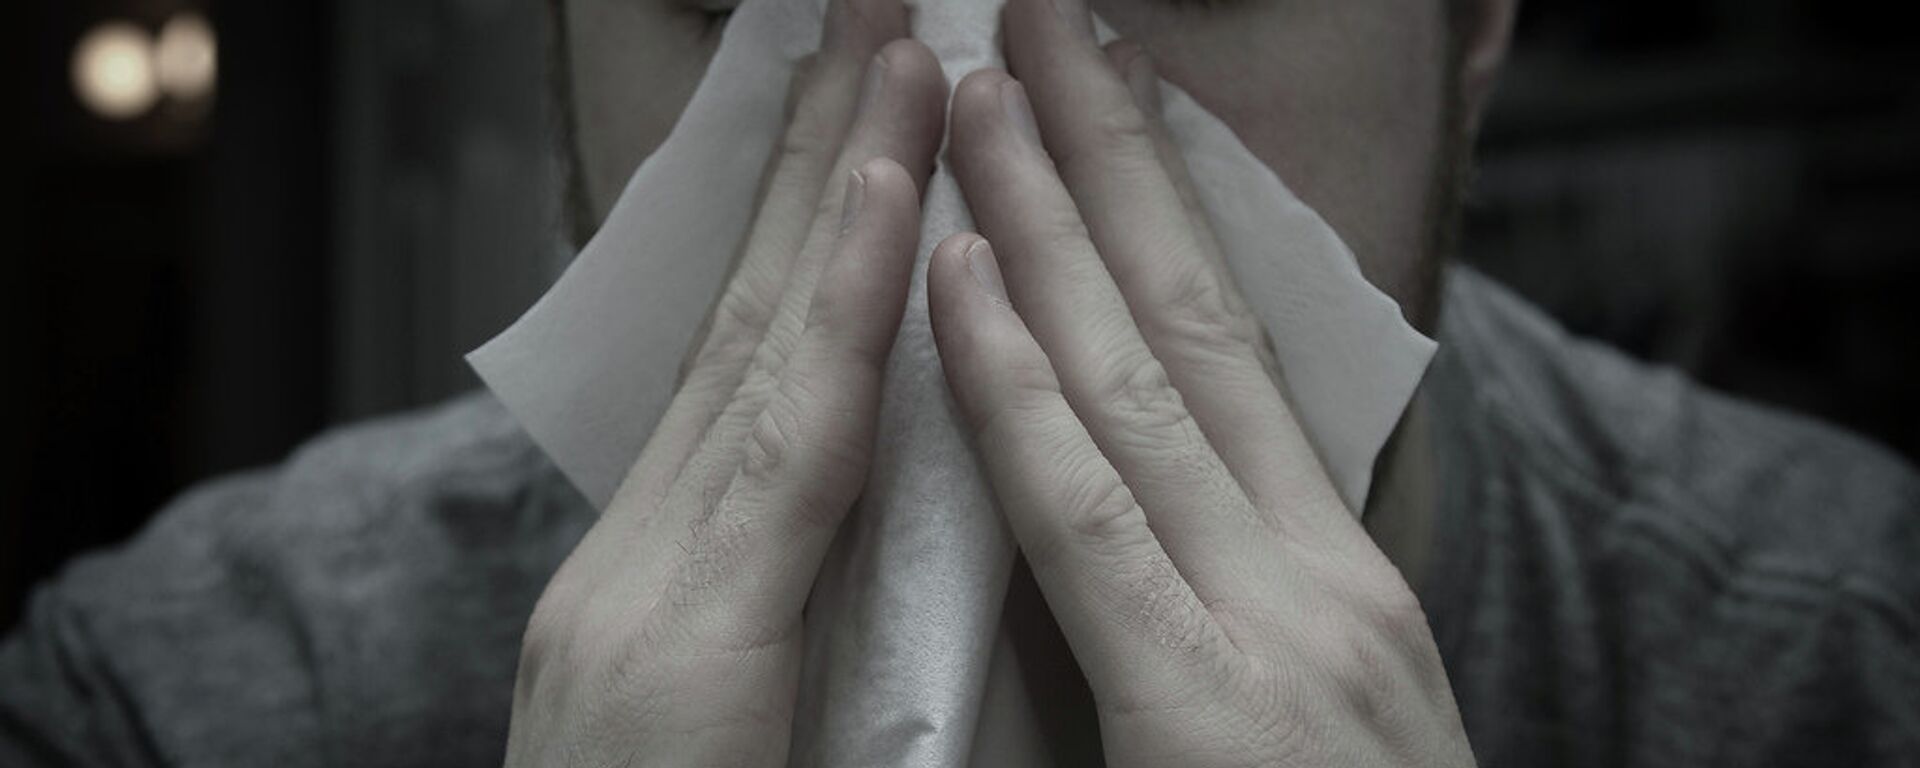 Карактеристични, први сиптоми алергија дисајних путева су свраб и пецкање у очима, сузење очију, кијање у серији - Sputnik Србија, 1920, 21.05.2016